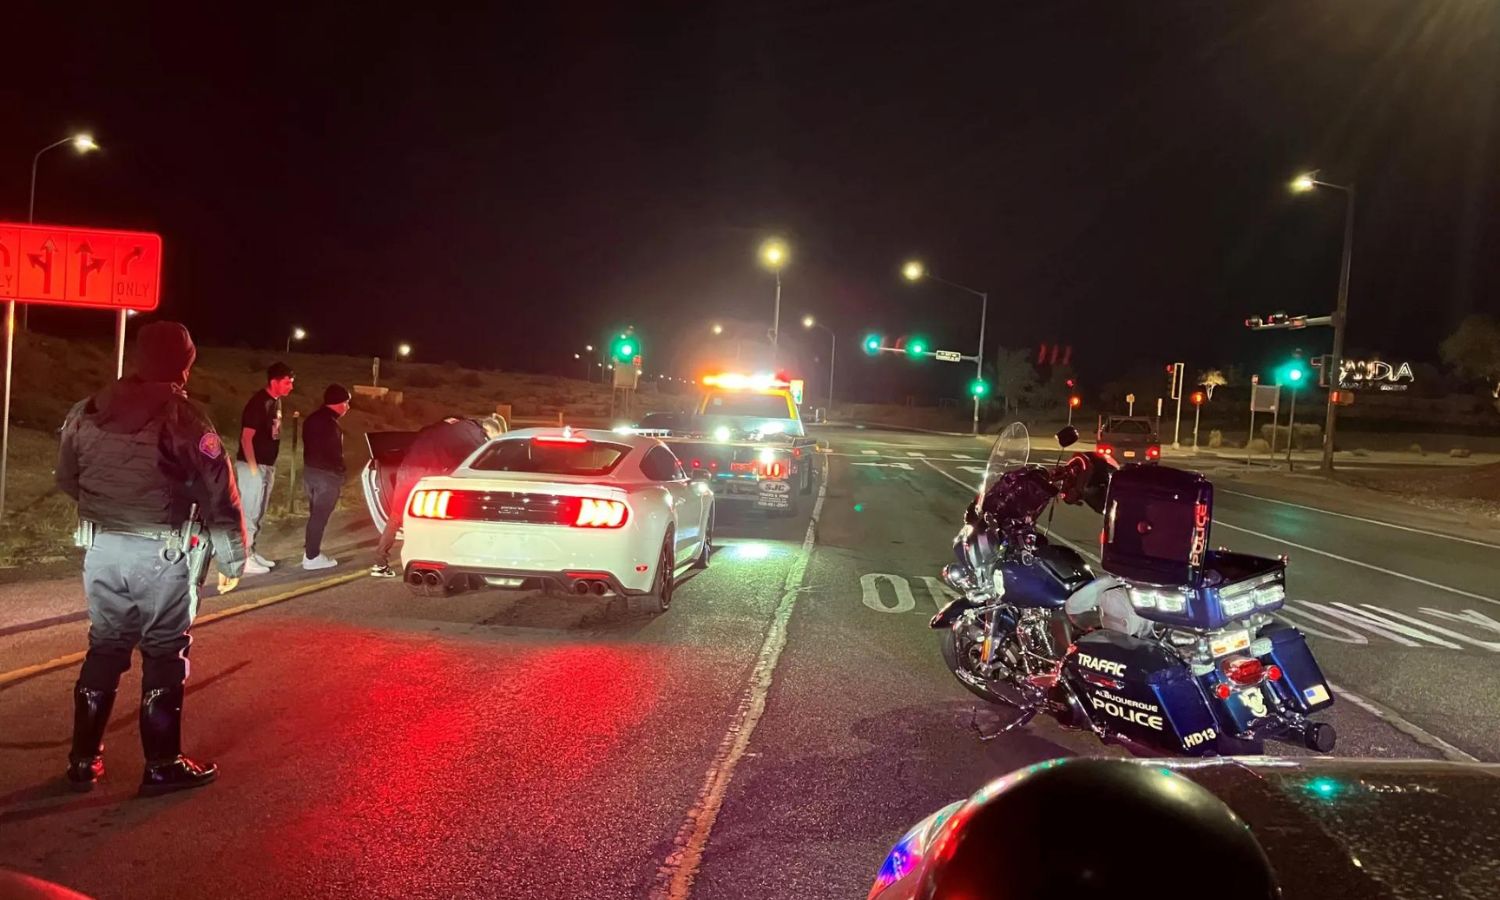 Albuquerque cops shut down street racing over the weekend